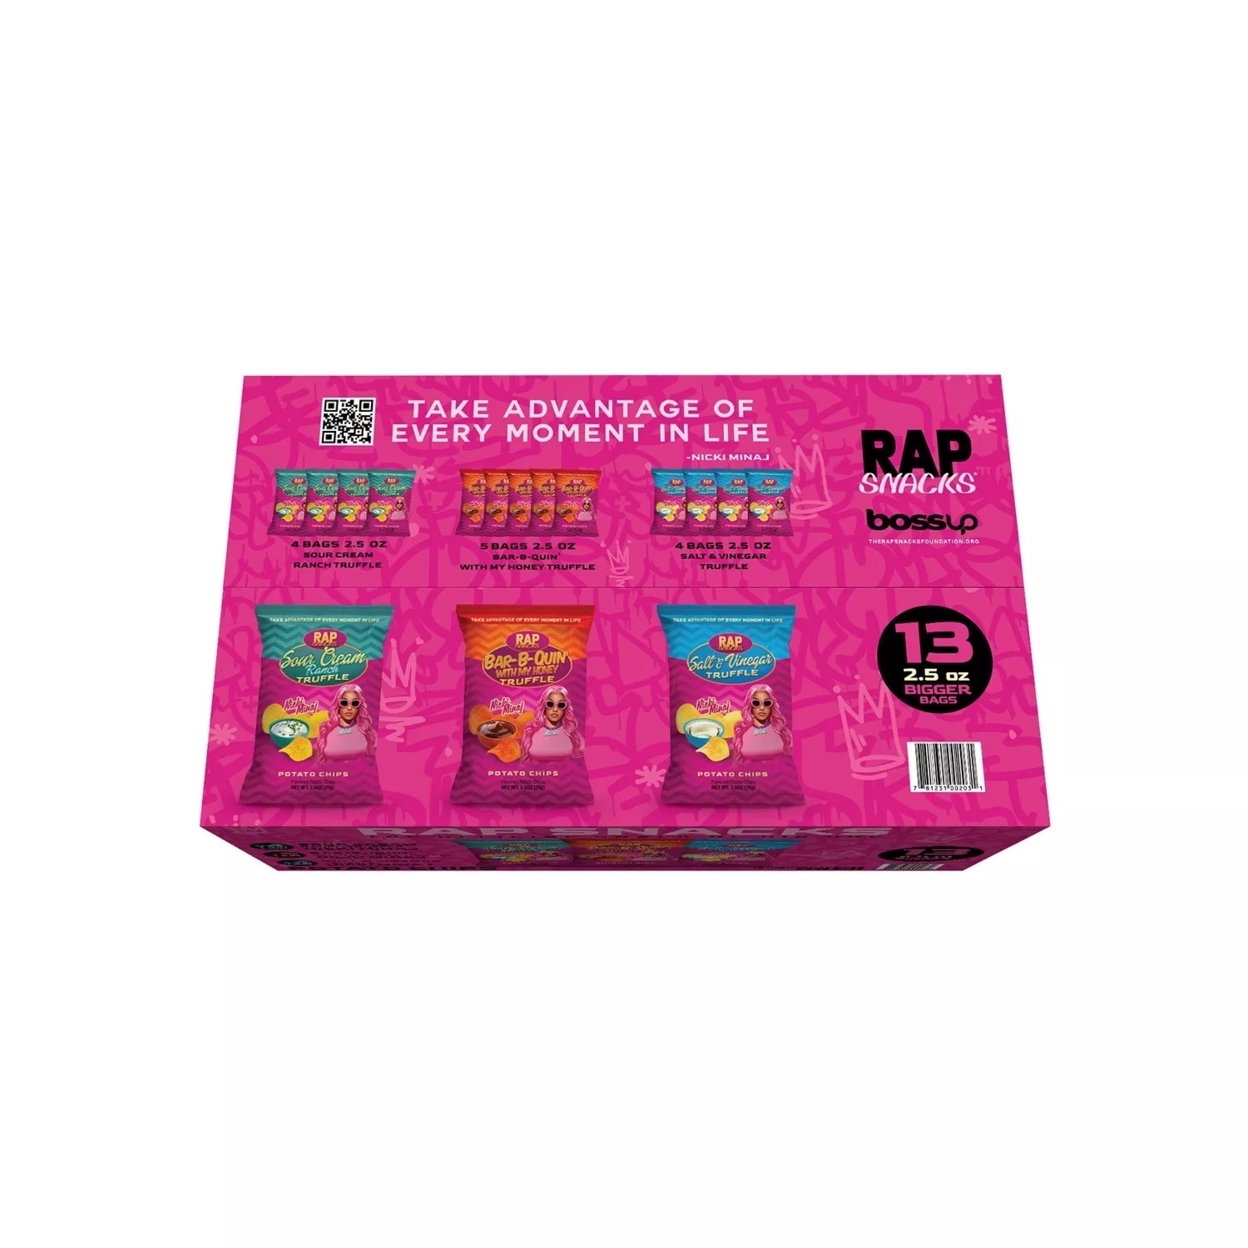 Rap Snacks Nicki Minaj Variety Pack Chips (Pack of 13) - image 3 of 5